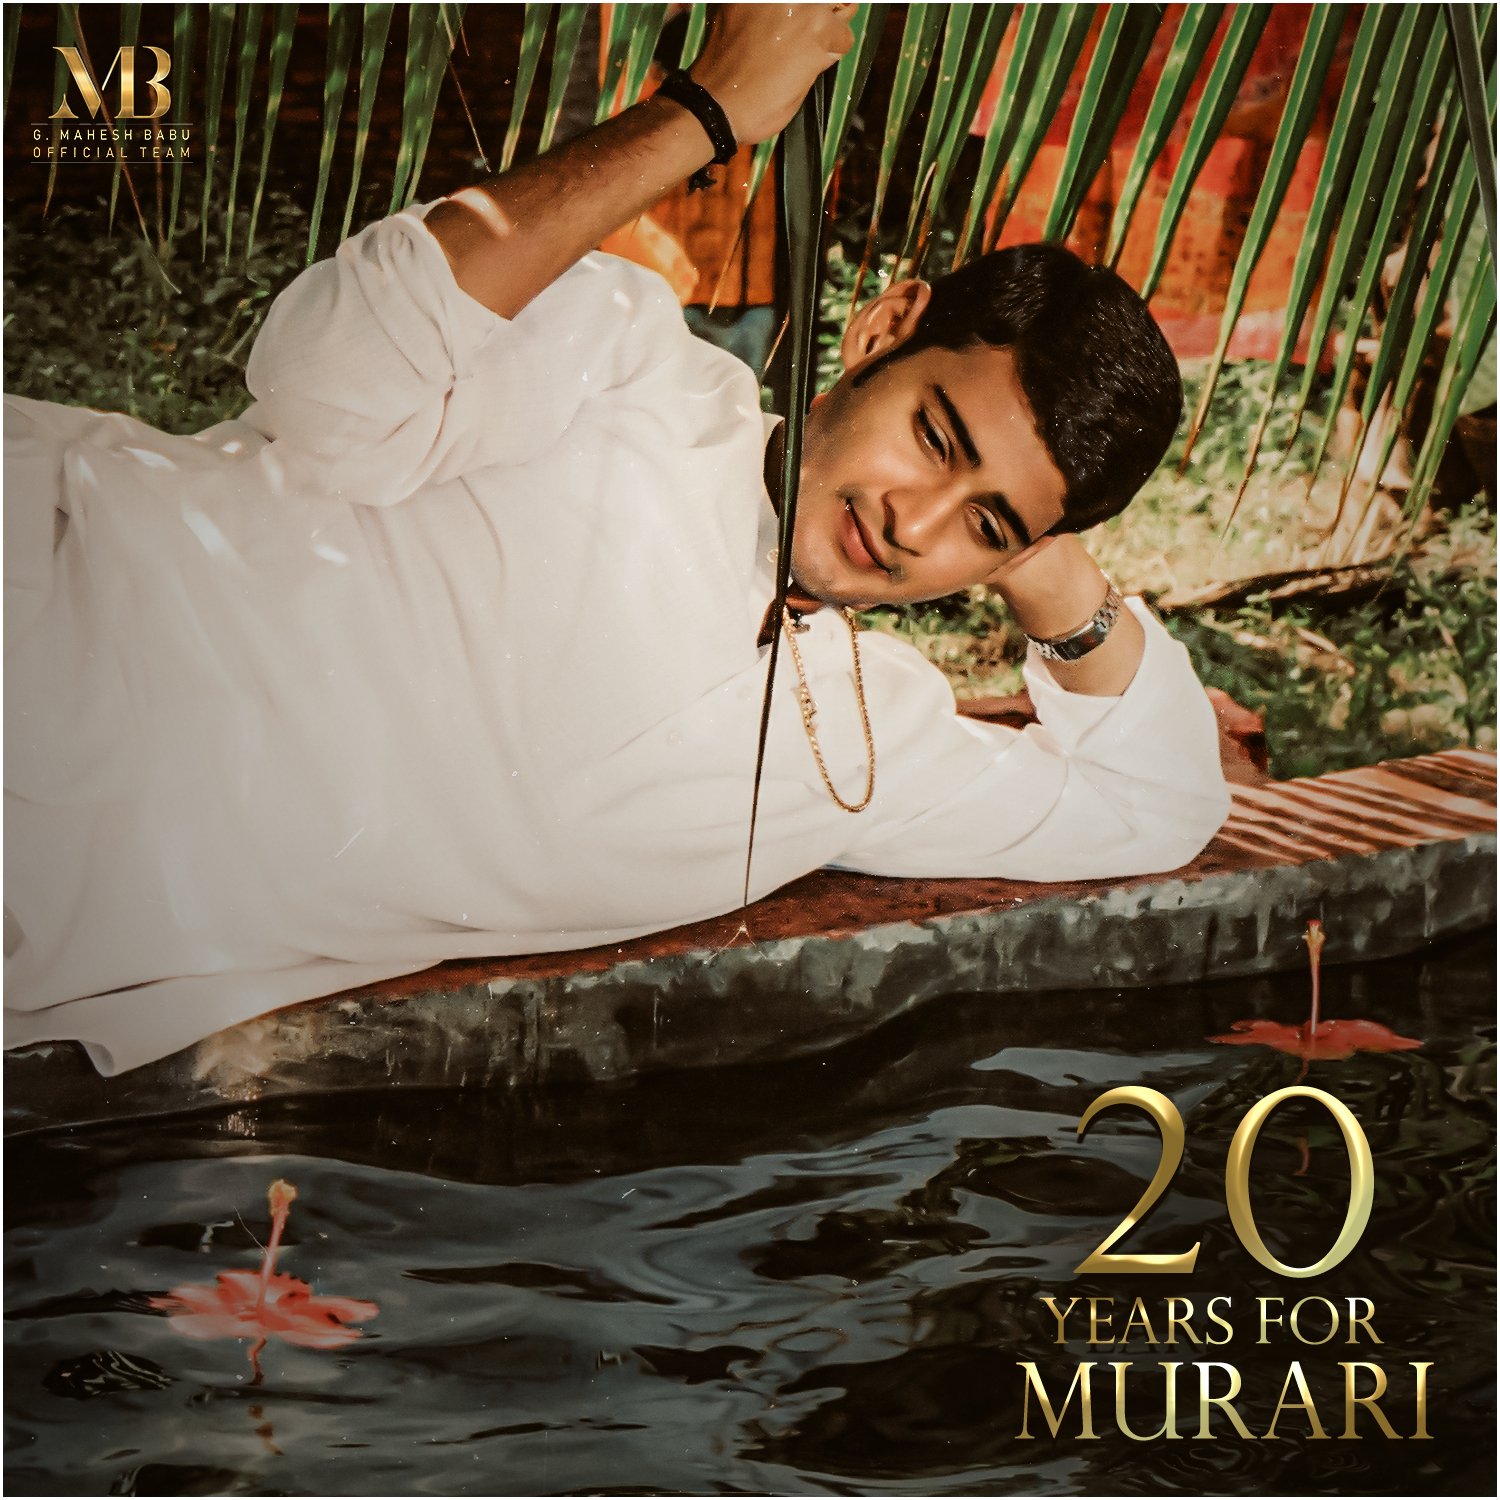 20 Years for Murari